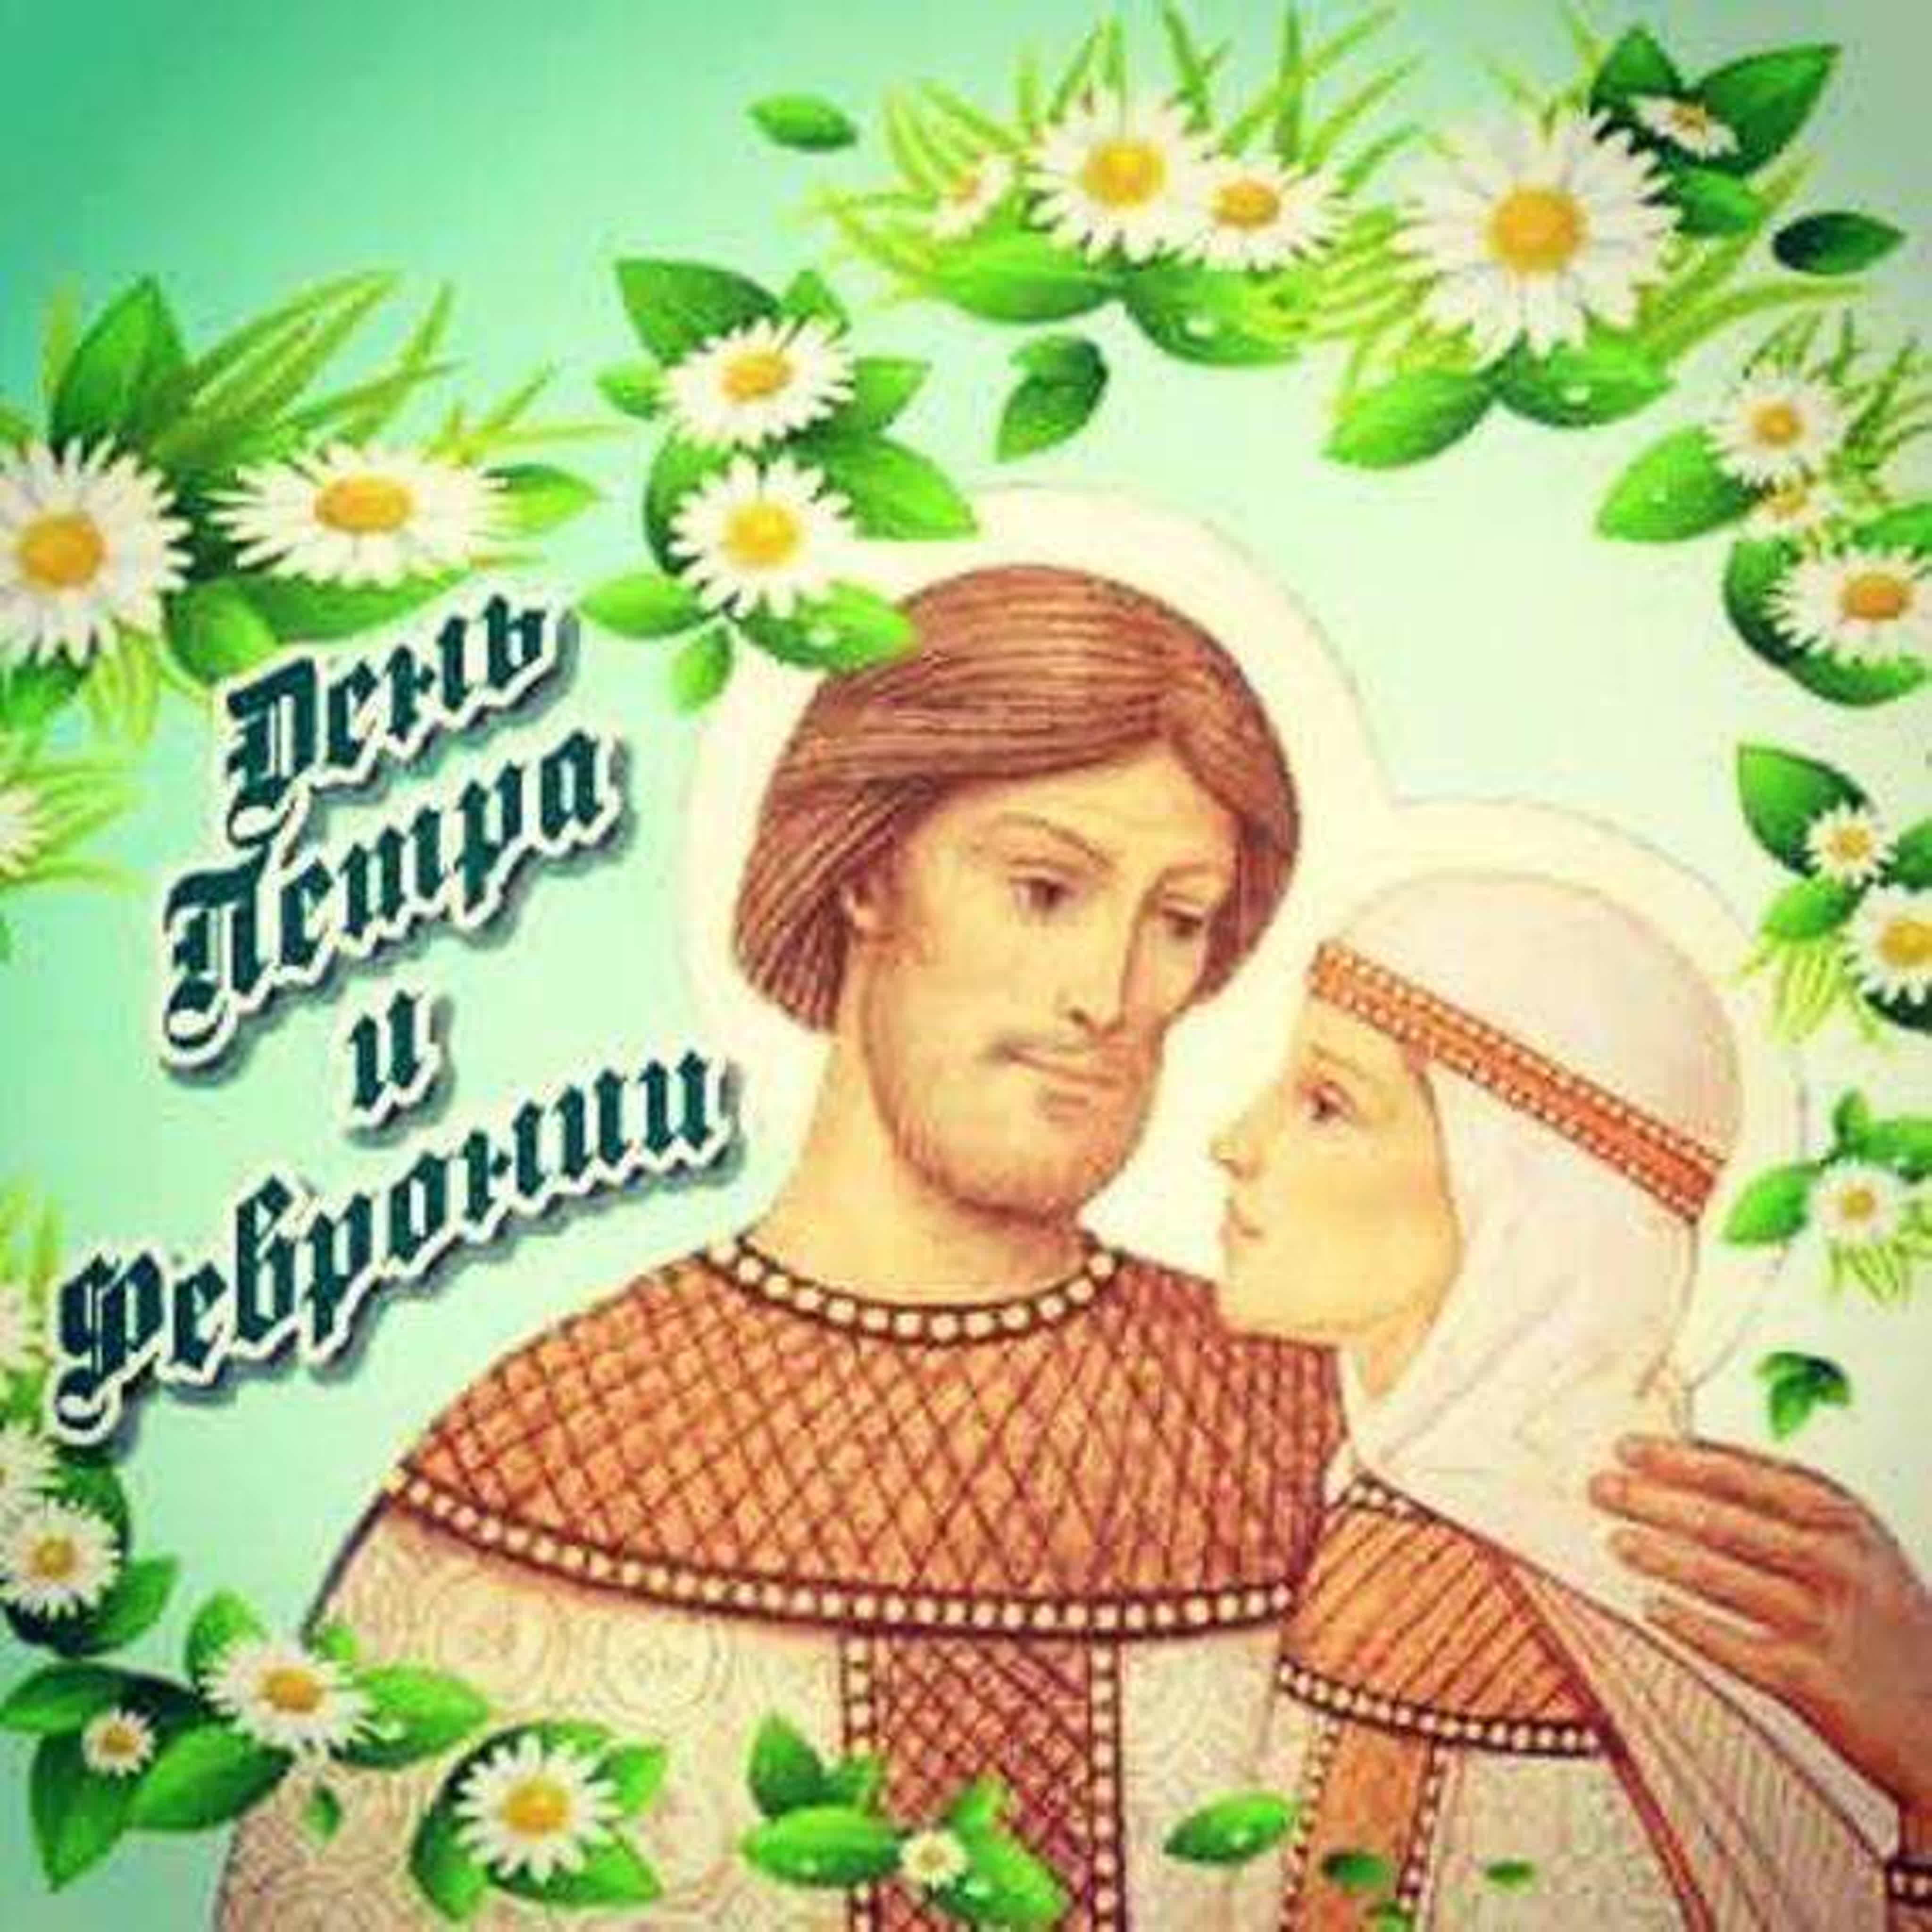 8 Июля день святых Петра и Февронии